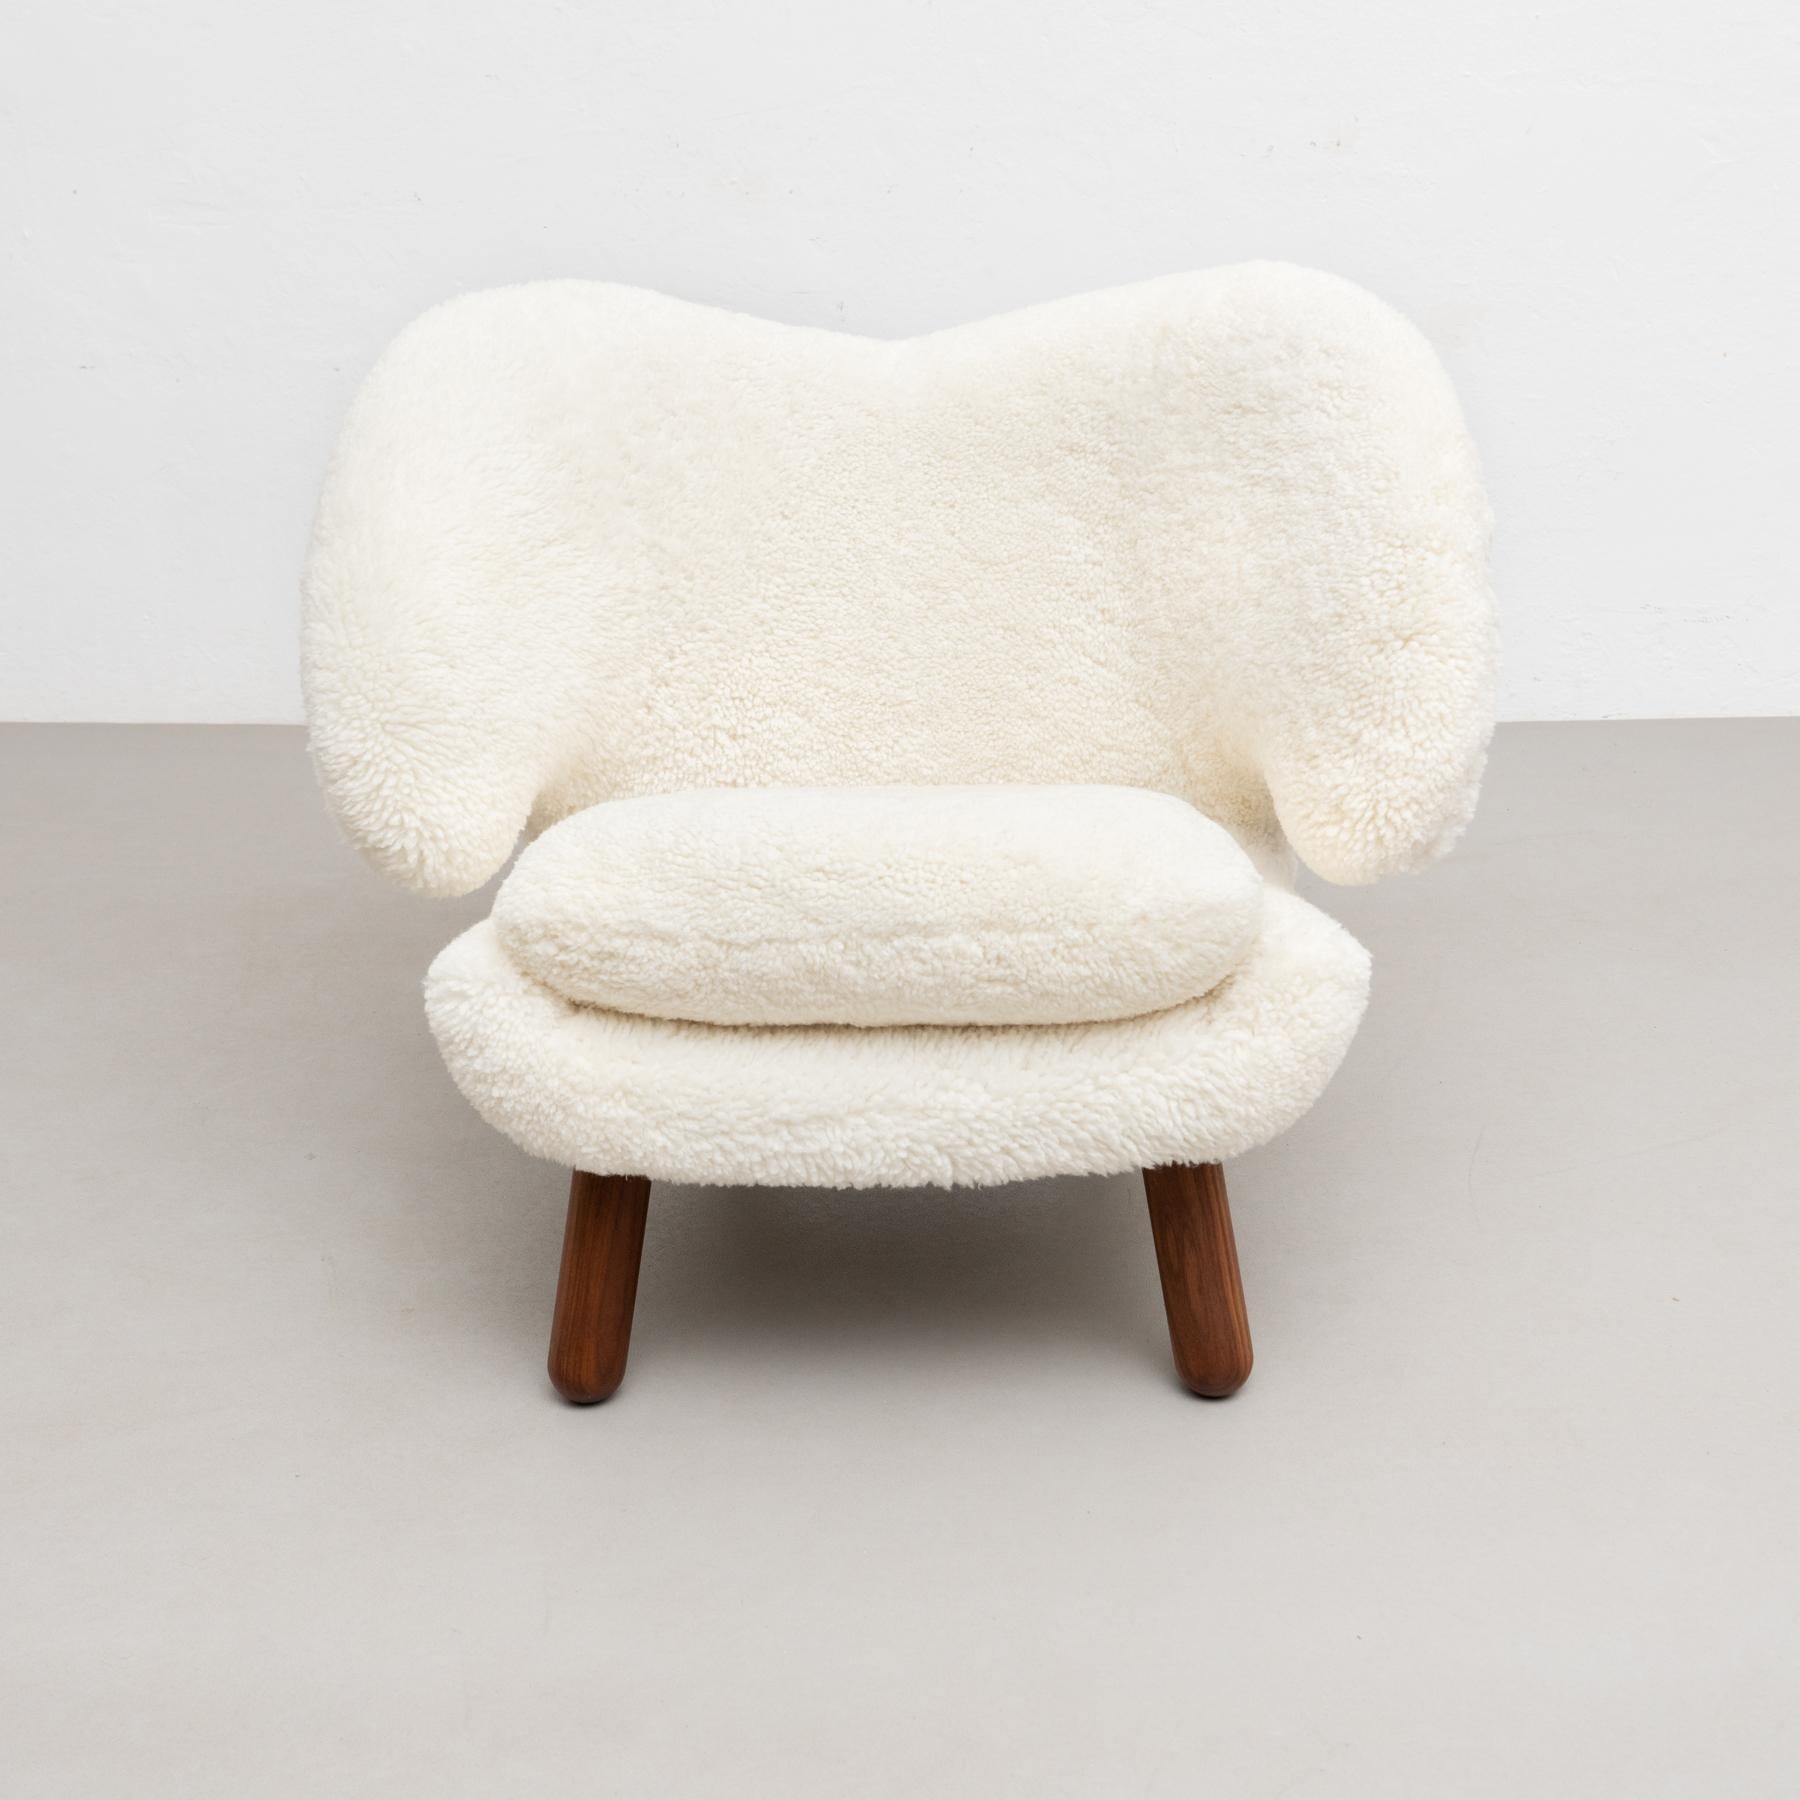 Finn Juhl Pelican Chair Upholstered in Offwhite Sheepskin For Sale 3